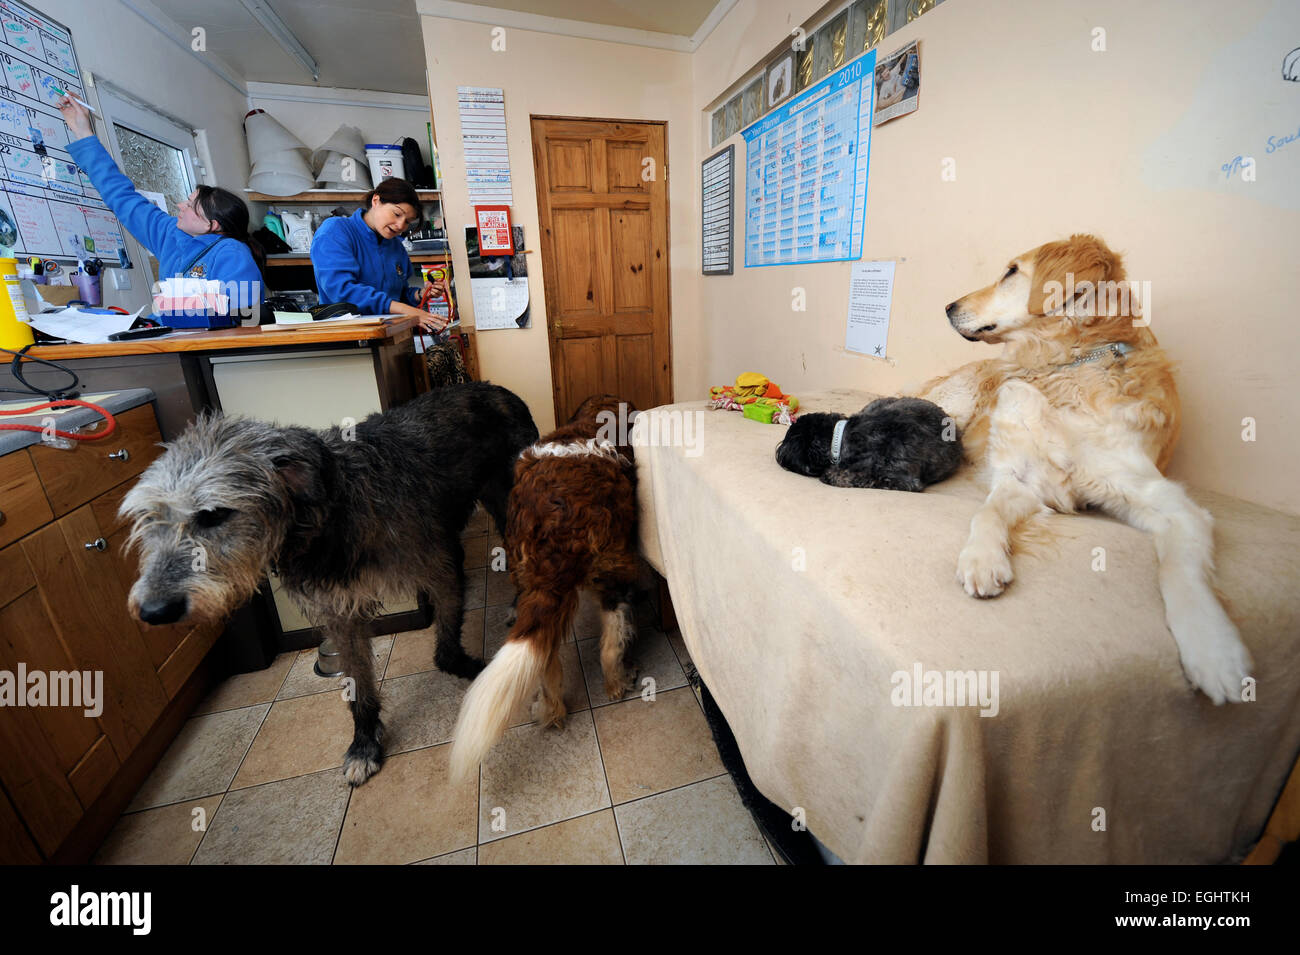 Les nombreuses larmes Animal Rescue center près de Llanelli, S. Wales UK - les chiens dans la zone de réception. Banque D'Images